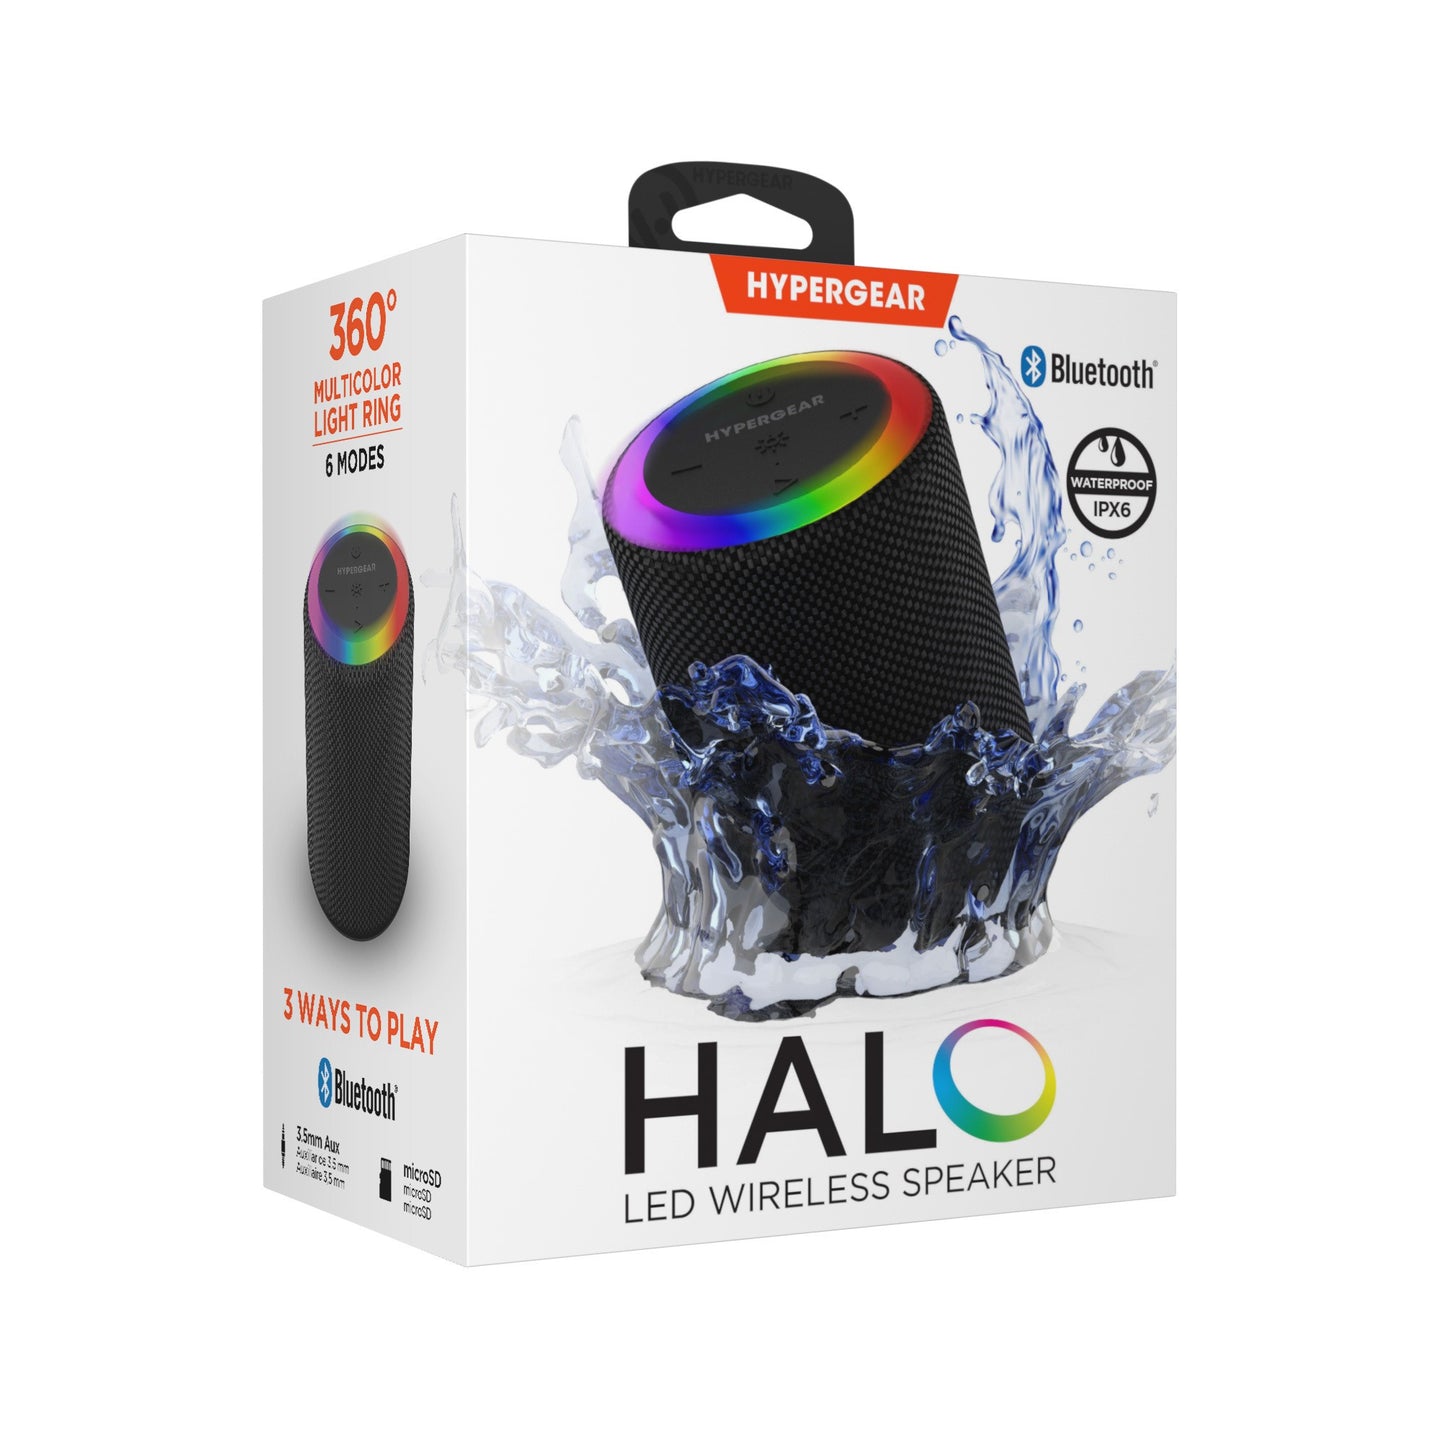 HyperGear Halo Wireless LED Speaker - Black - 15-12841